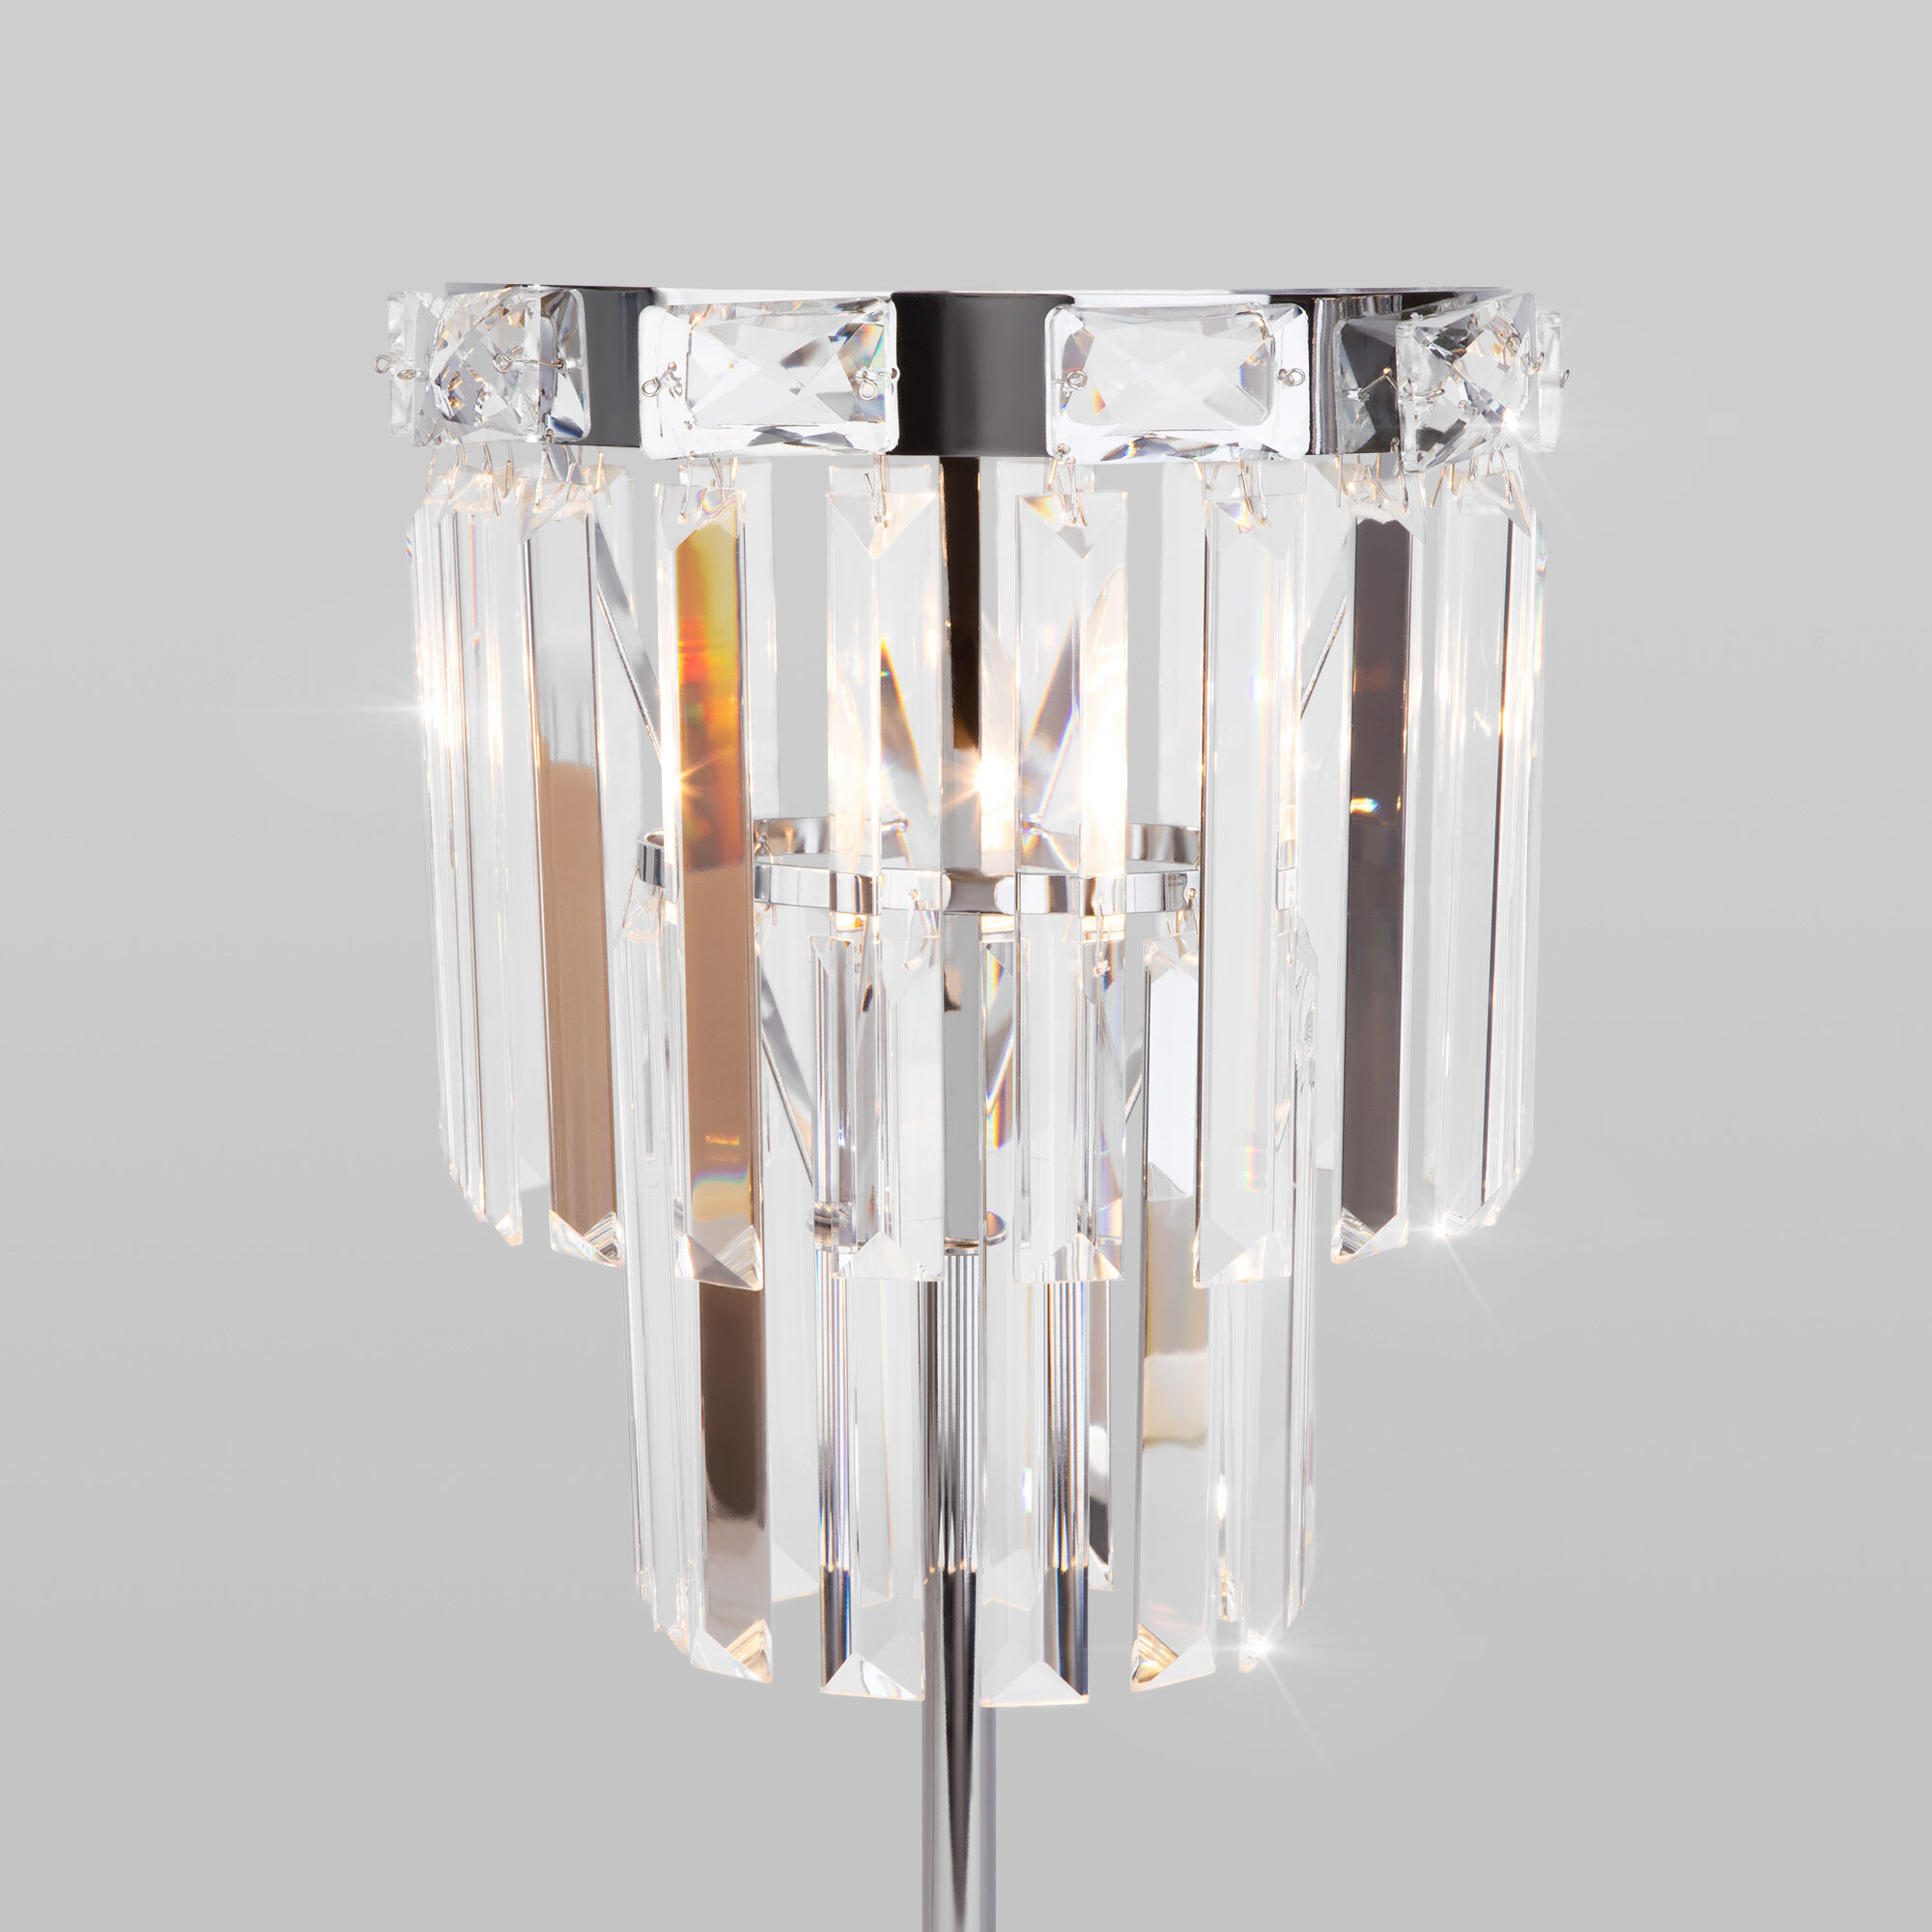 Настольный светильник с хрусталем Eurosvet Elegante 01136/1 хром. Фото 3